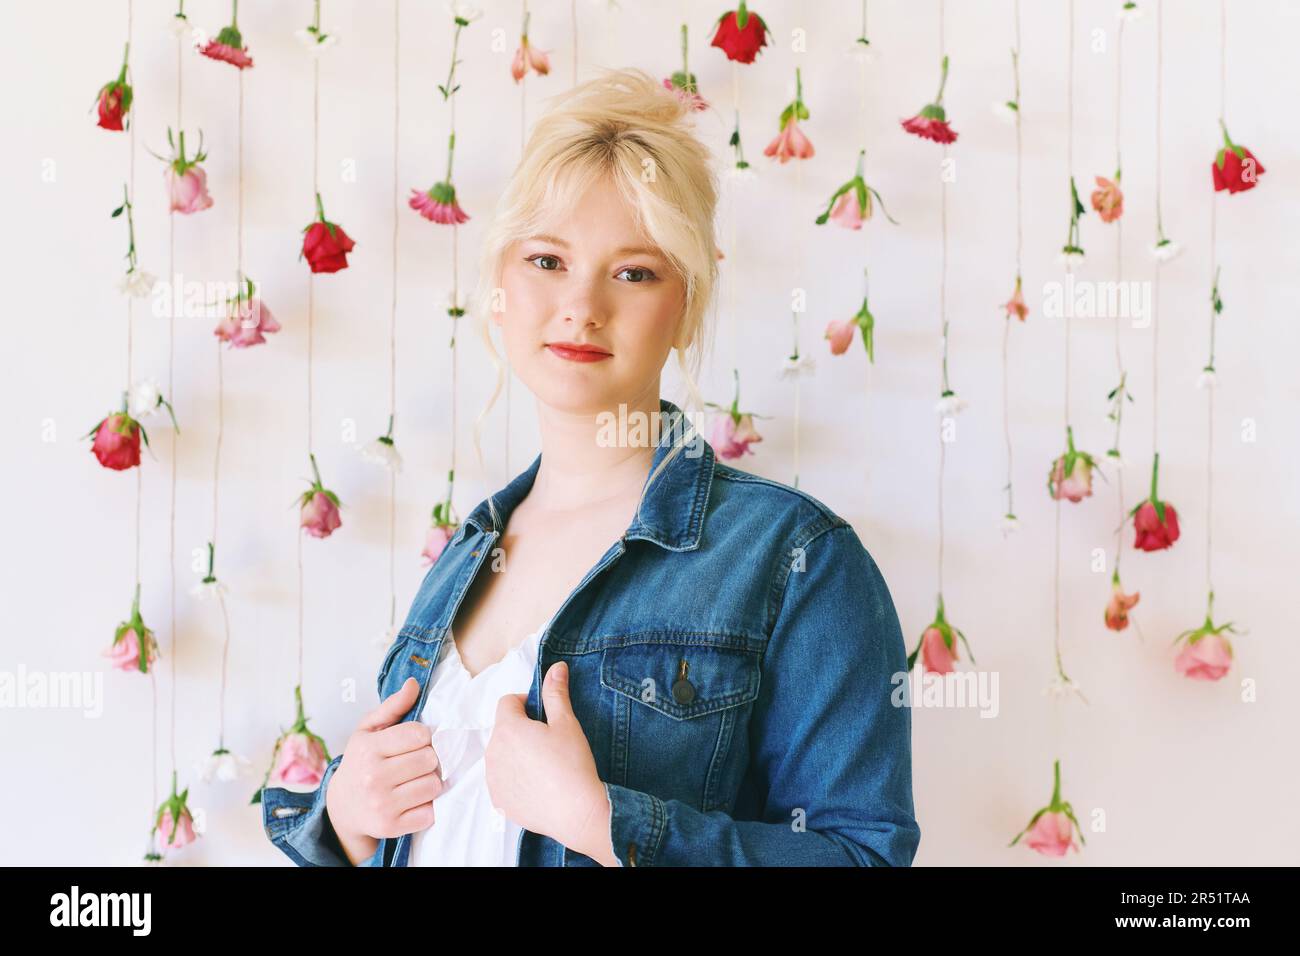 Studioporträt eines hübschen jungen Mädchens im Alter von 15 bis 16 Jahren, das eine Jeansjacke trägt und auf weißem Hintergrund mit hängenden Blumen, Schönheit und Mode posiert Stockfoto